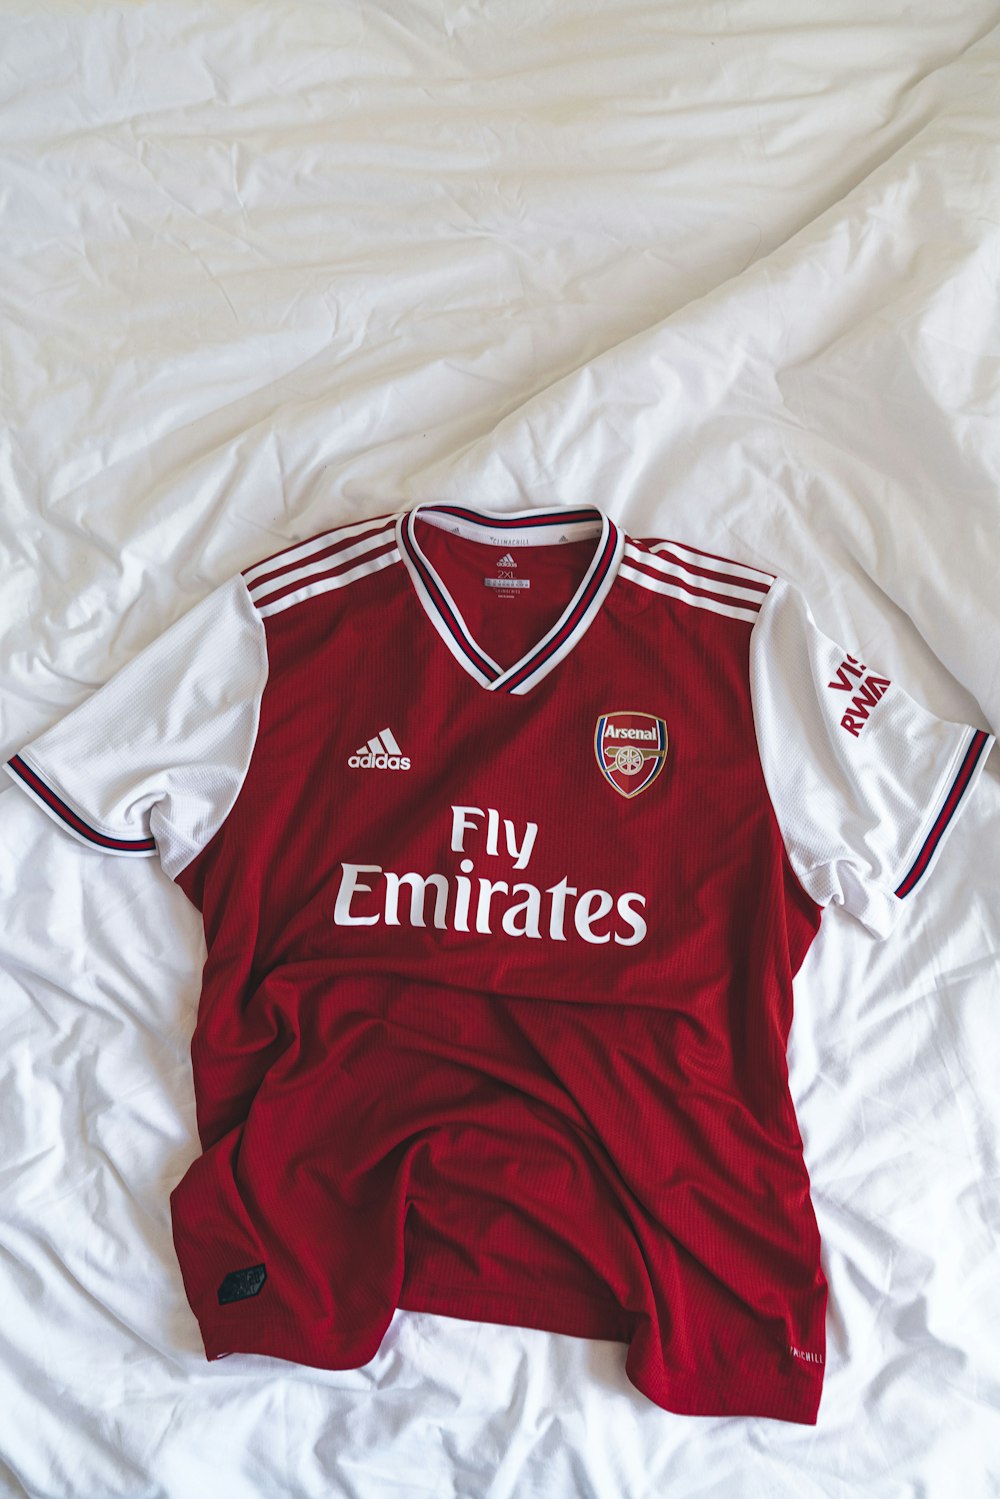 alimentar Ortodoxo acre Foto camiseta roja y blanca adidas Fly Emirates – Imagen Arsenal gratis en  Unsplash